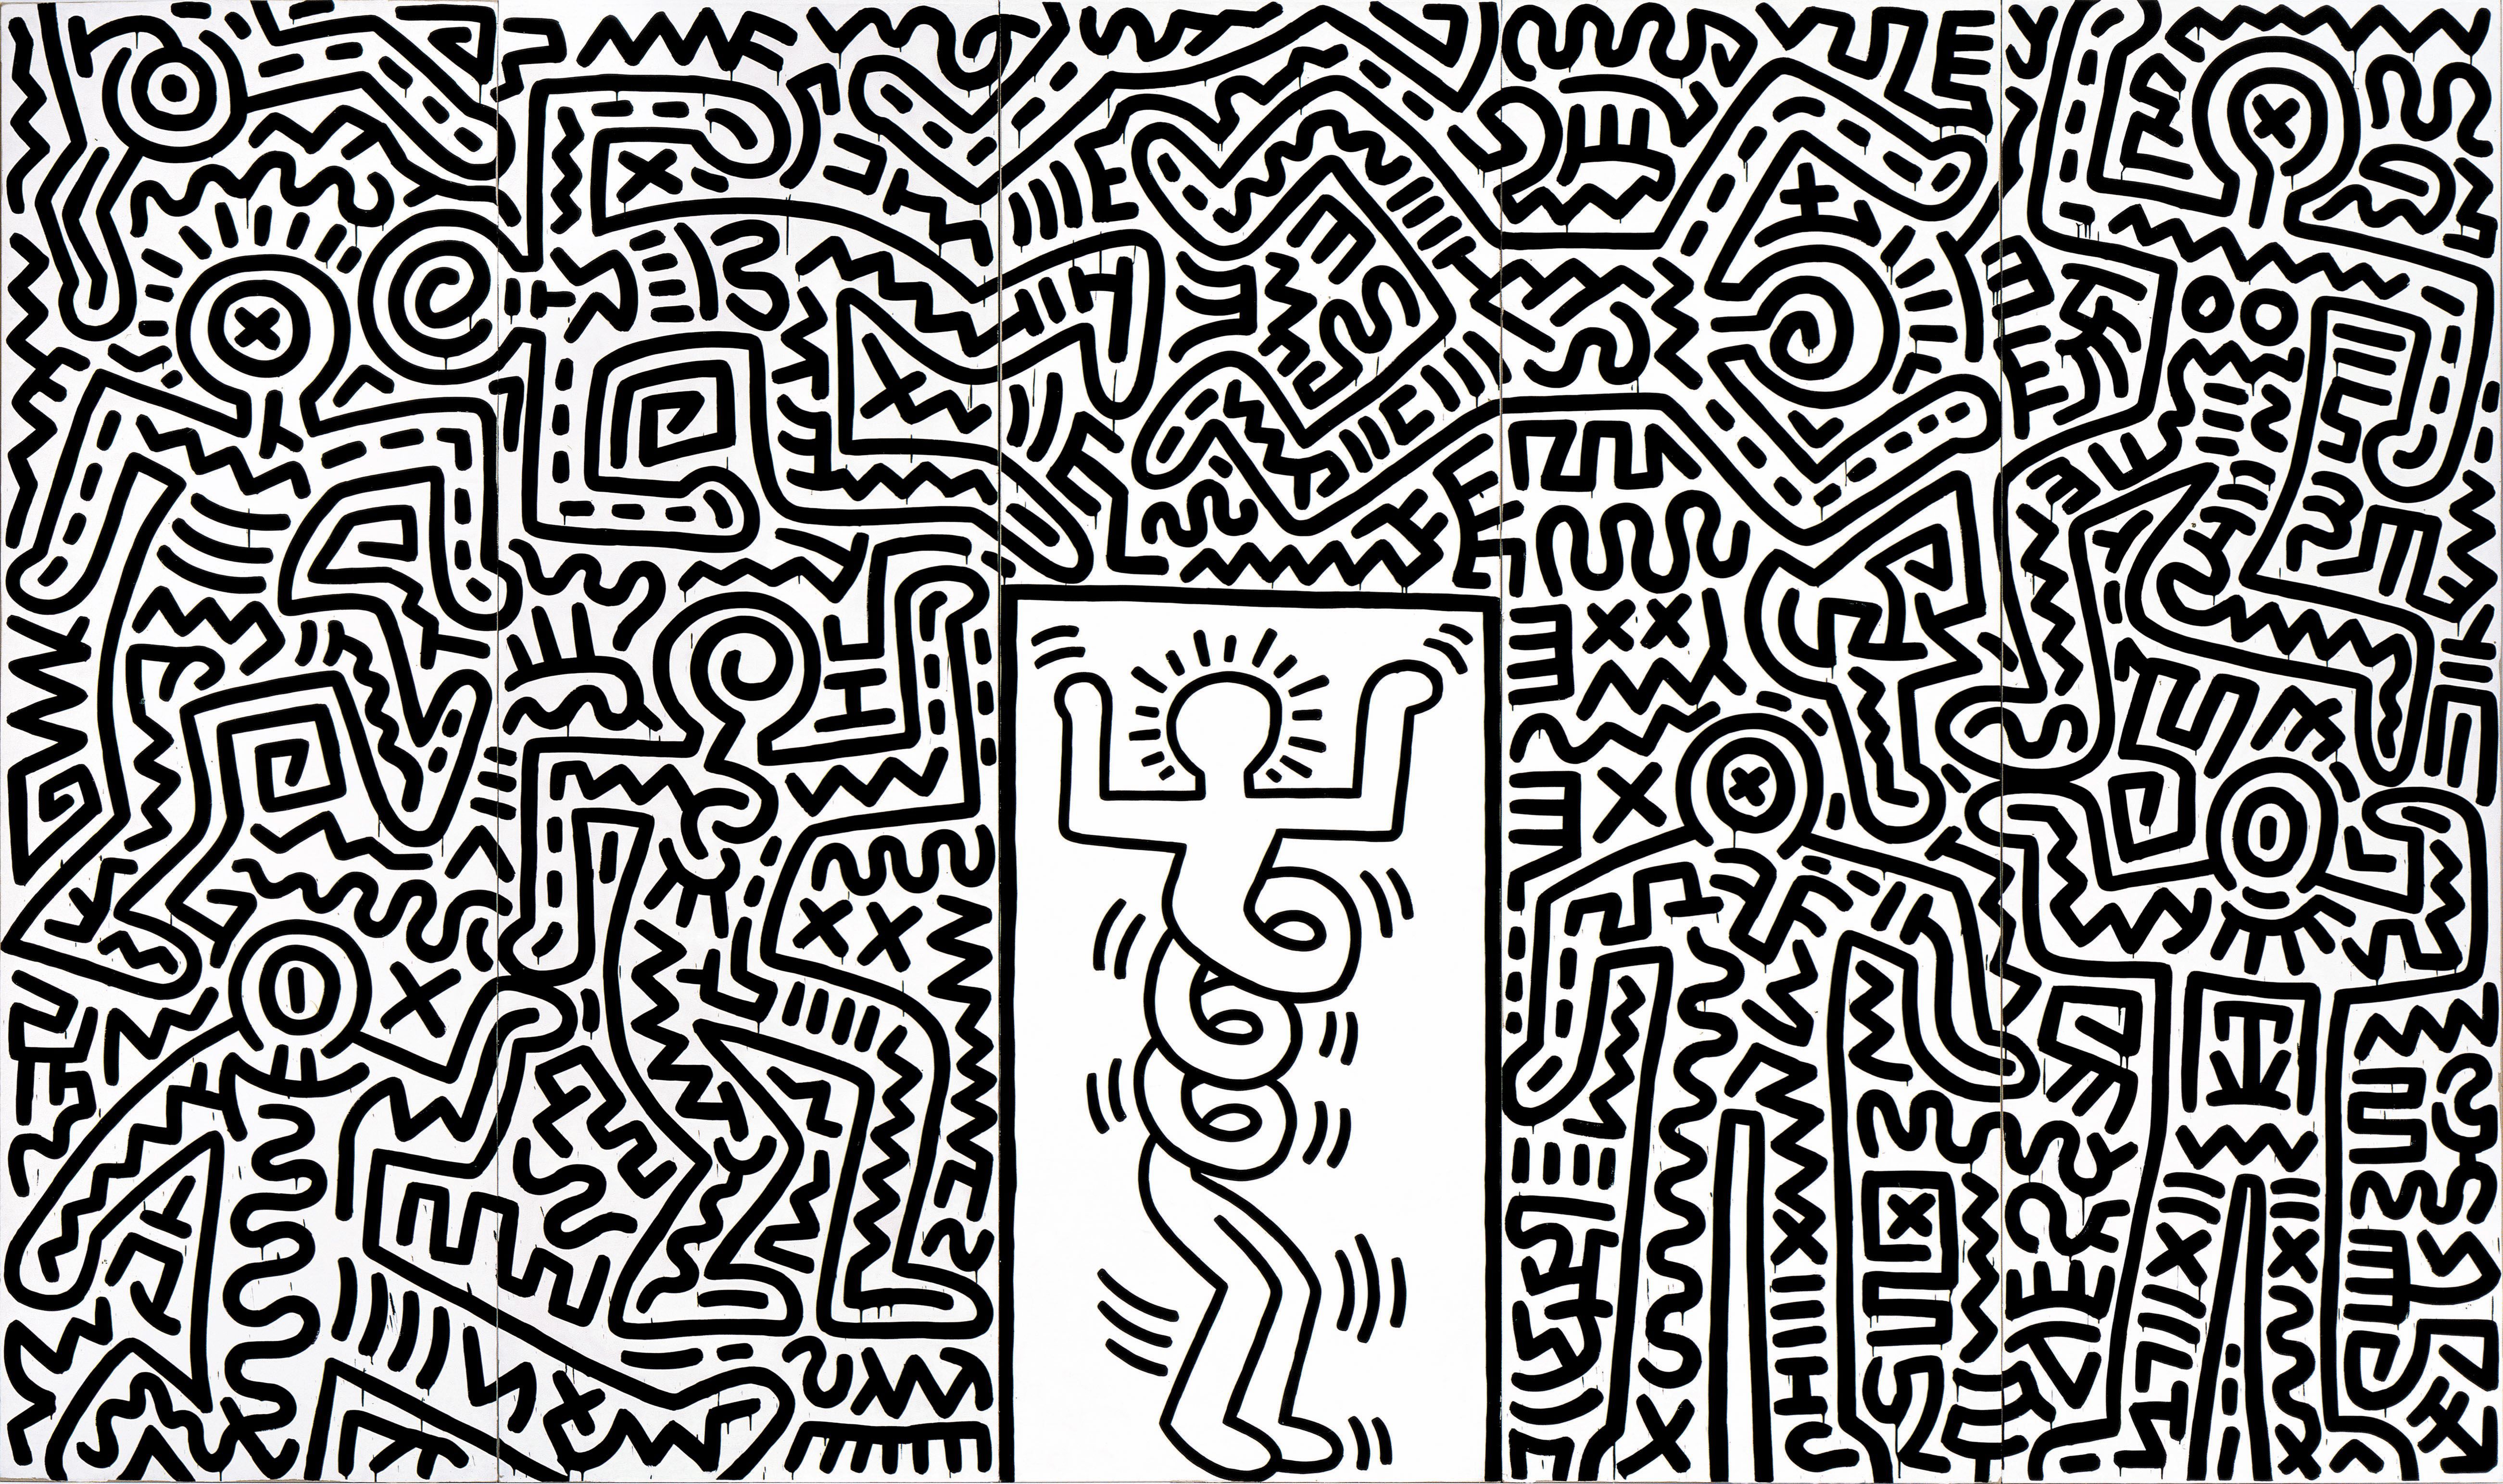 『スウィート・サタデー・ナイト』のための舞台セット 1985年 中村キース・ヘリング美術館蔵 Keith Haring Artwork (c)Keith Haring Foundation